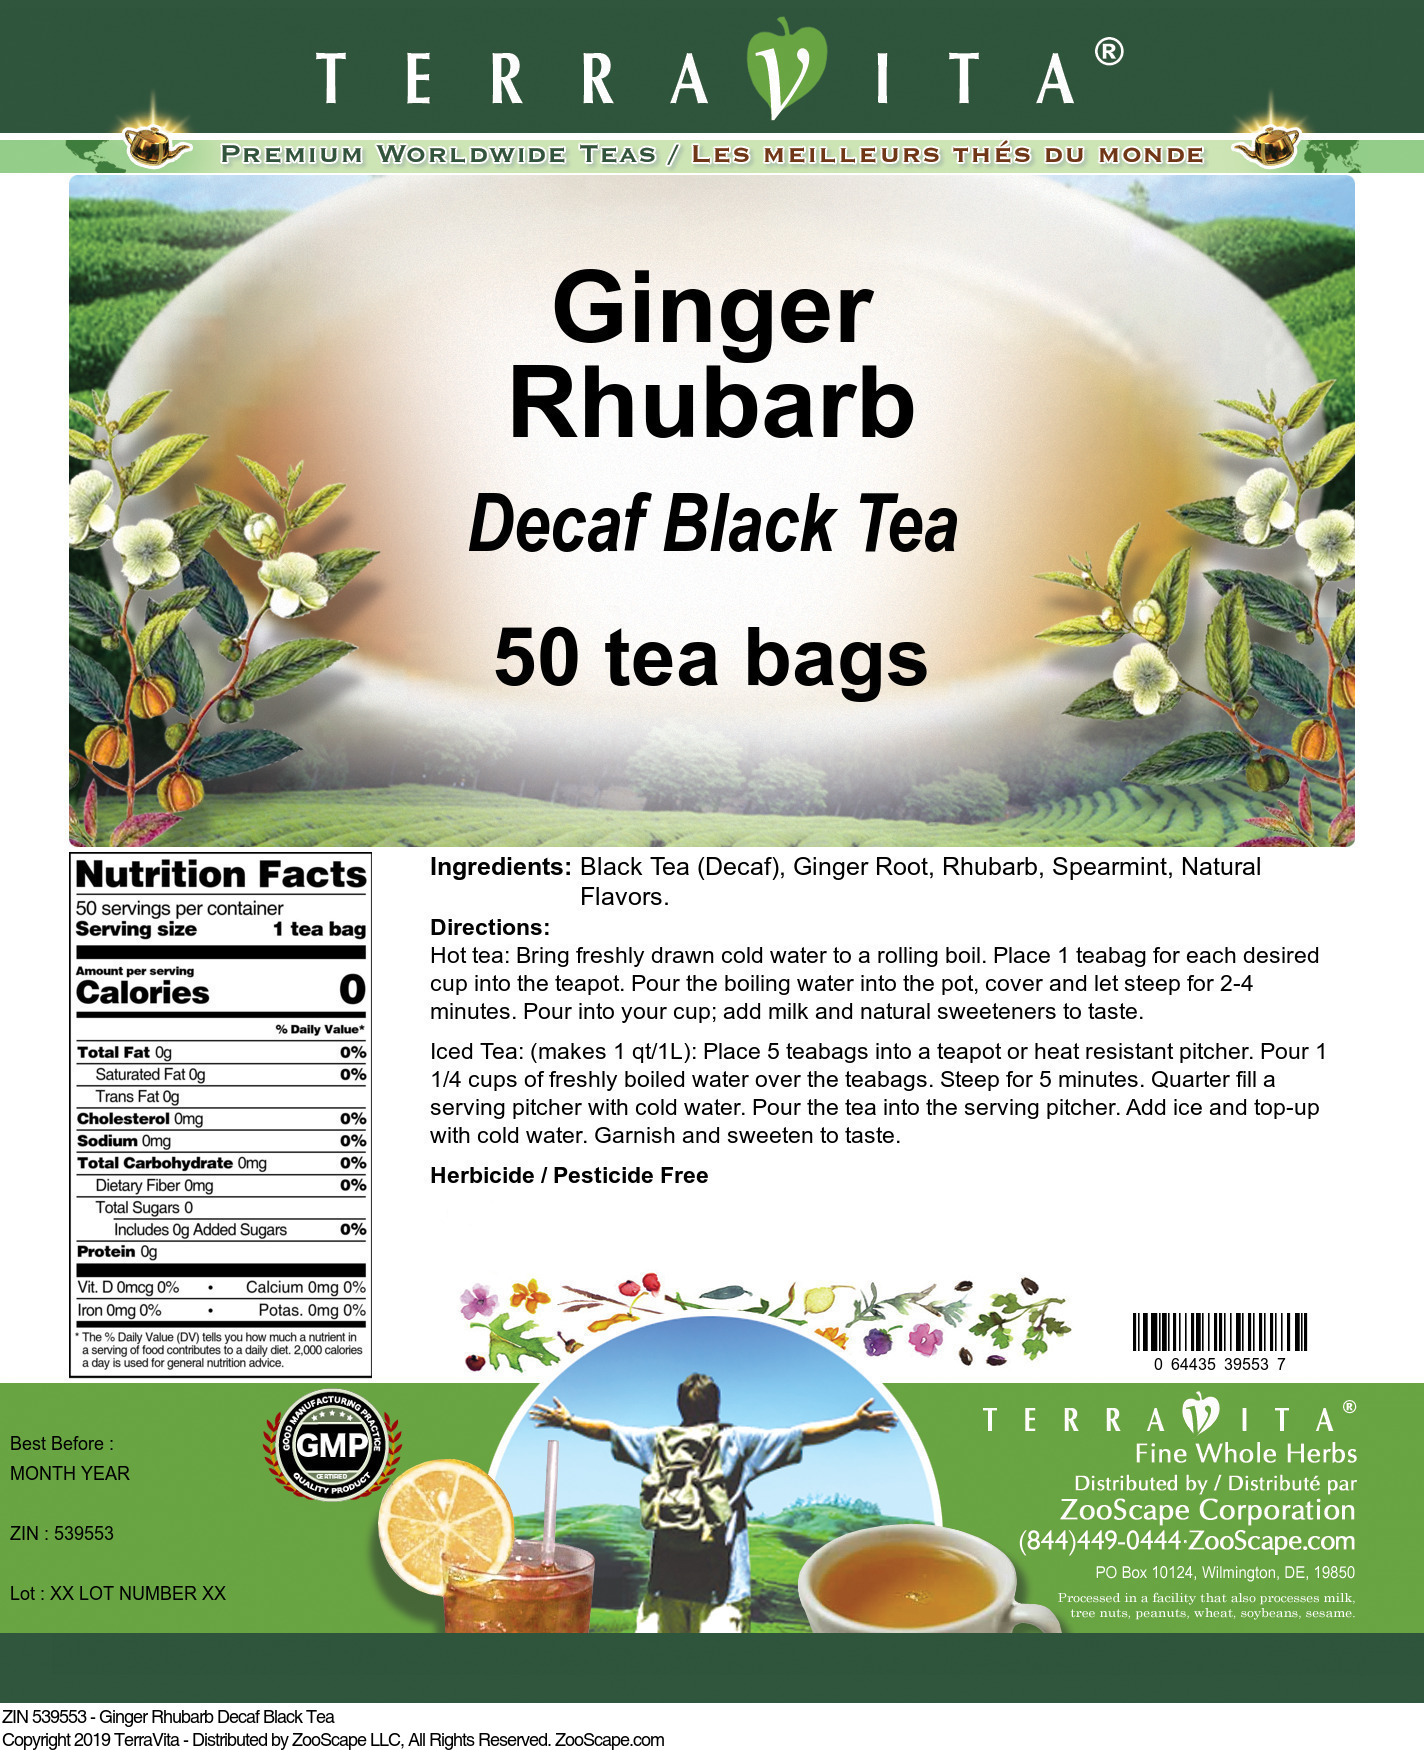 Ginger Rhubarb Decaf Black Tea - Label